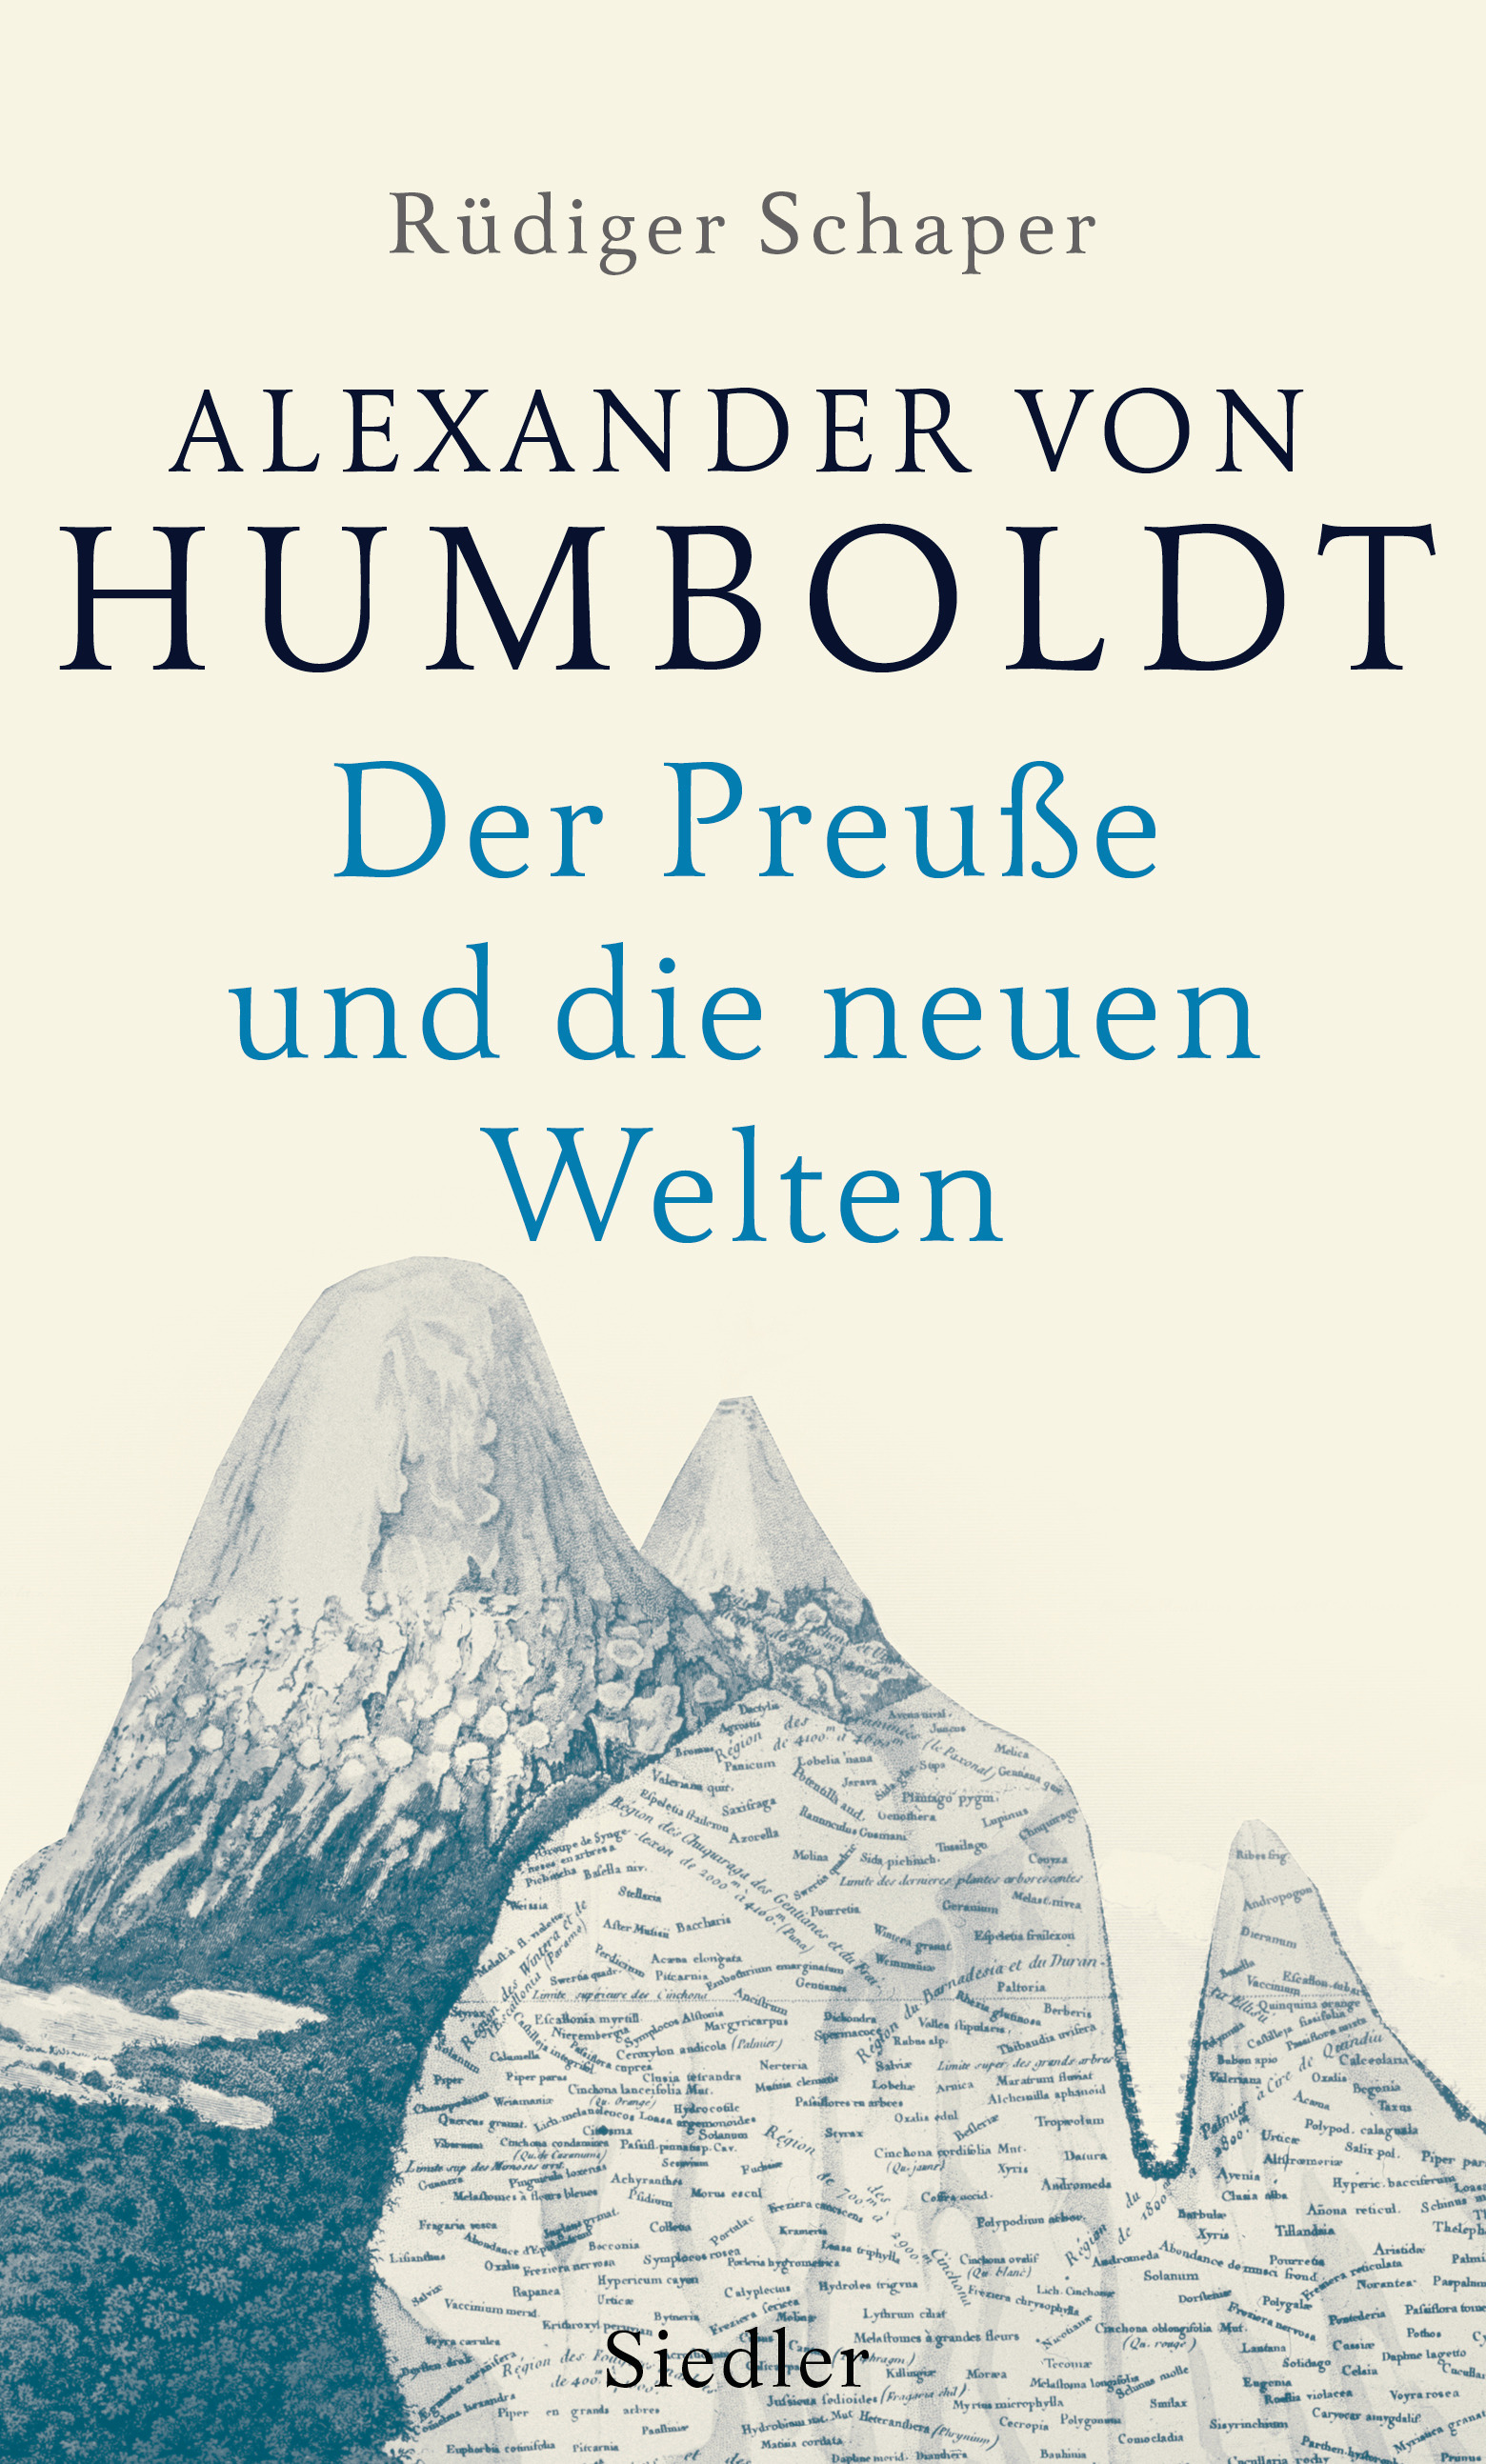 Rüdiger Schaper. Alexander von Humboldt. Der Preuße und die neuen Welten 